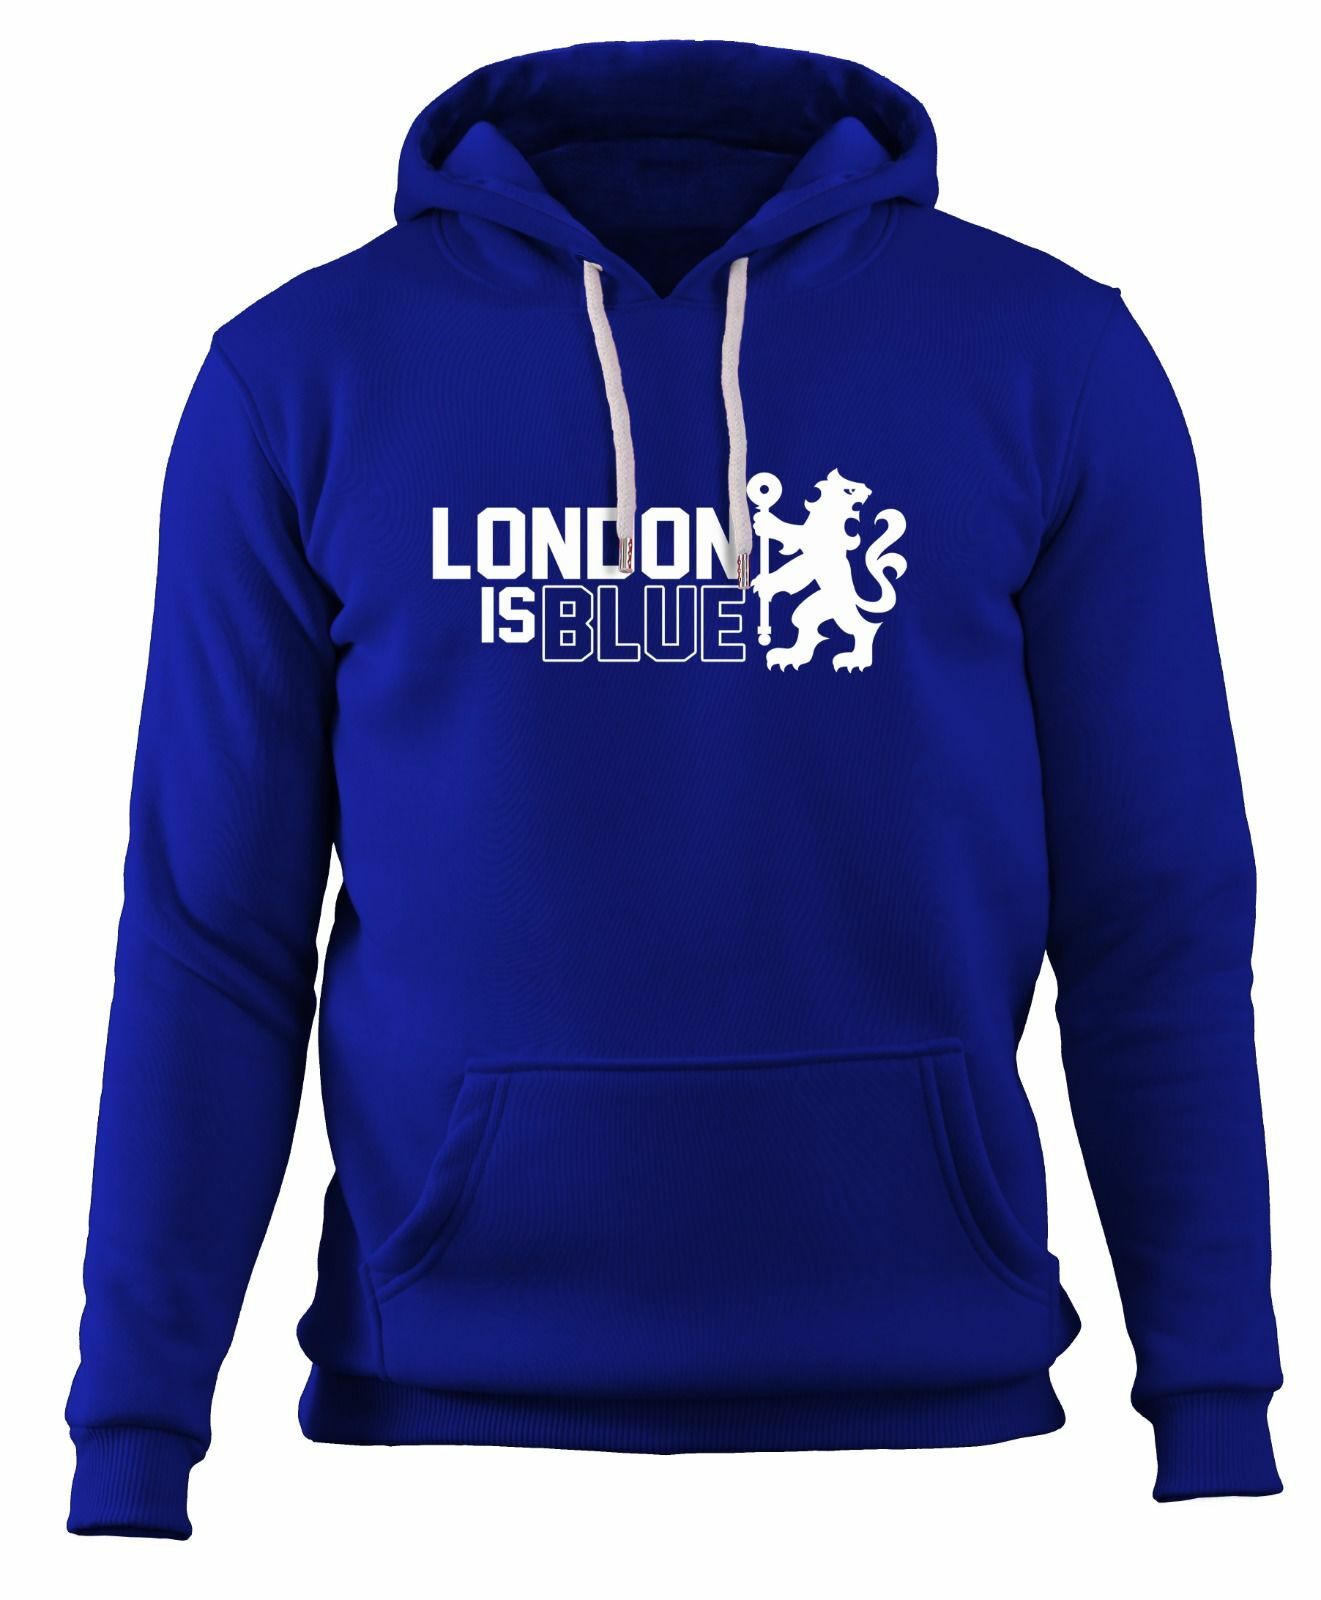 Chelsea - London is Blue! Sweatshirt